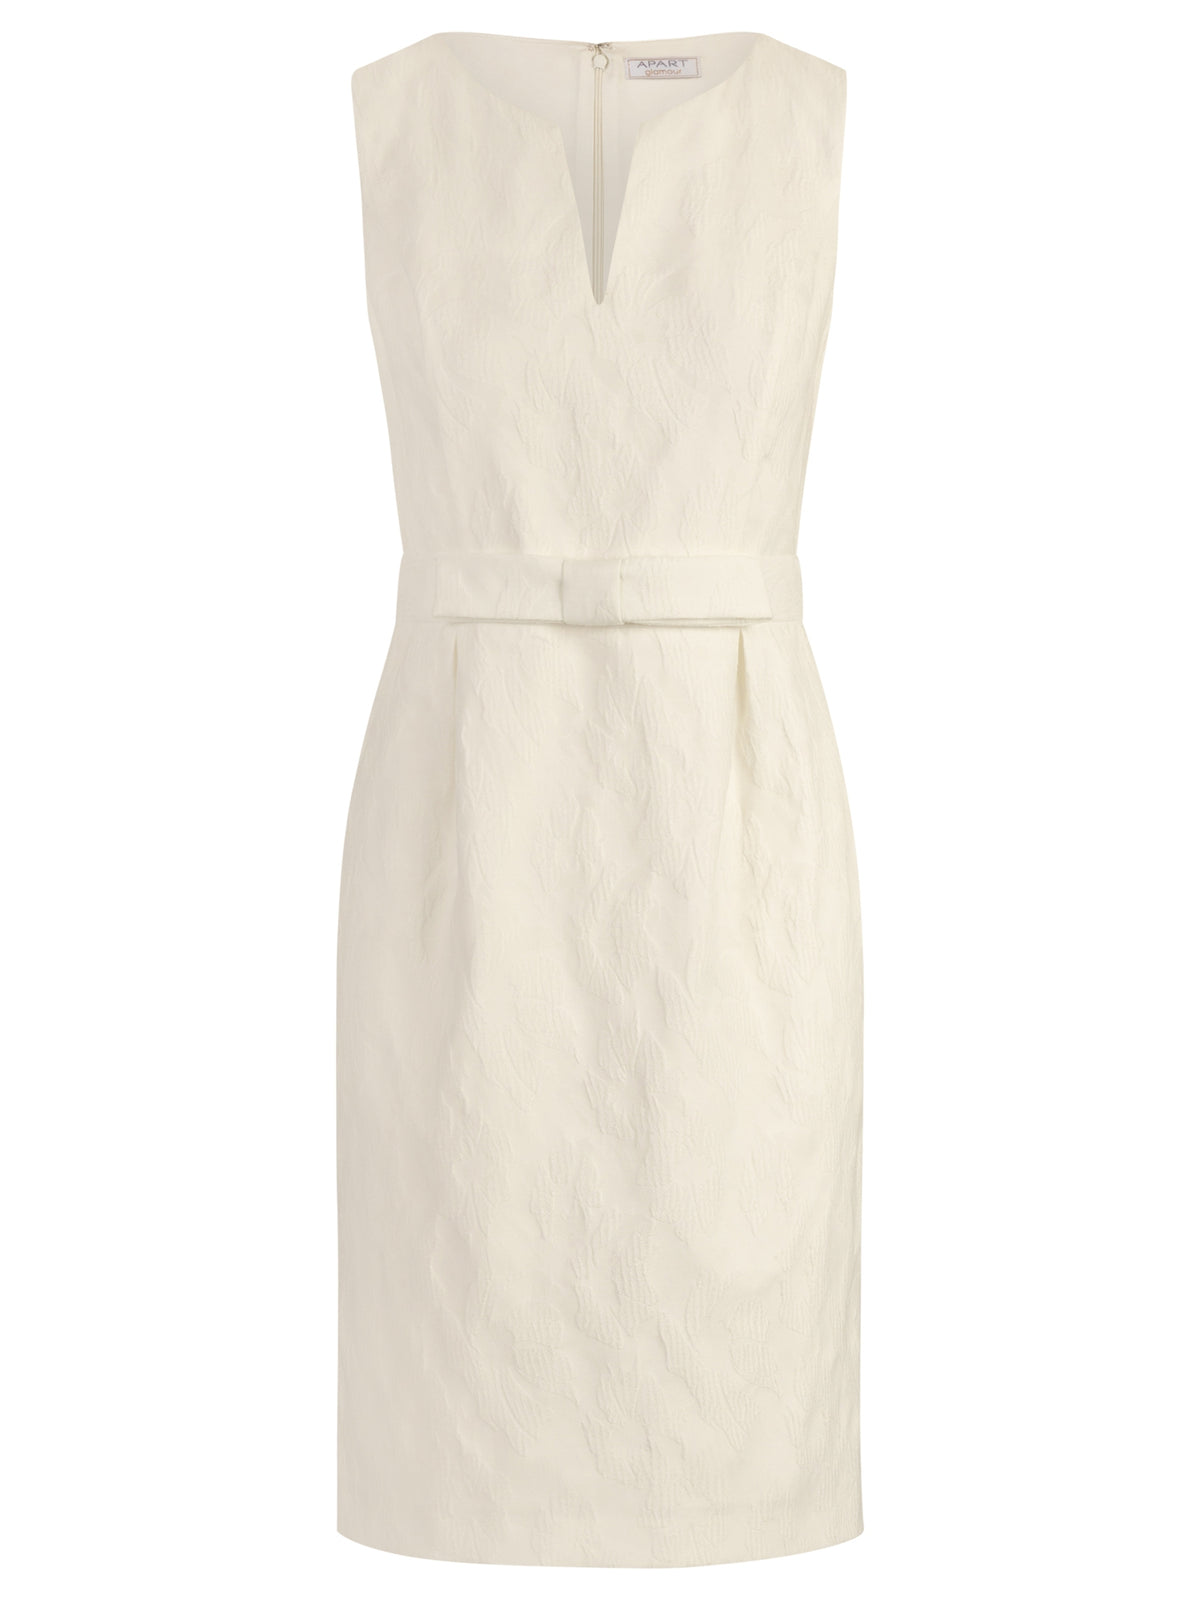 APART Hochzeitskleid aus einer leicht strukturierten Ware mit eingewebten Blüten | creme